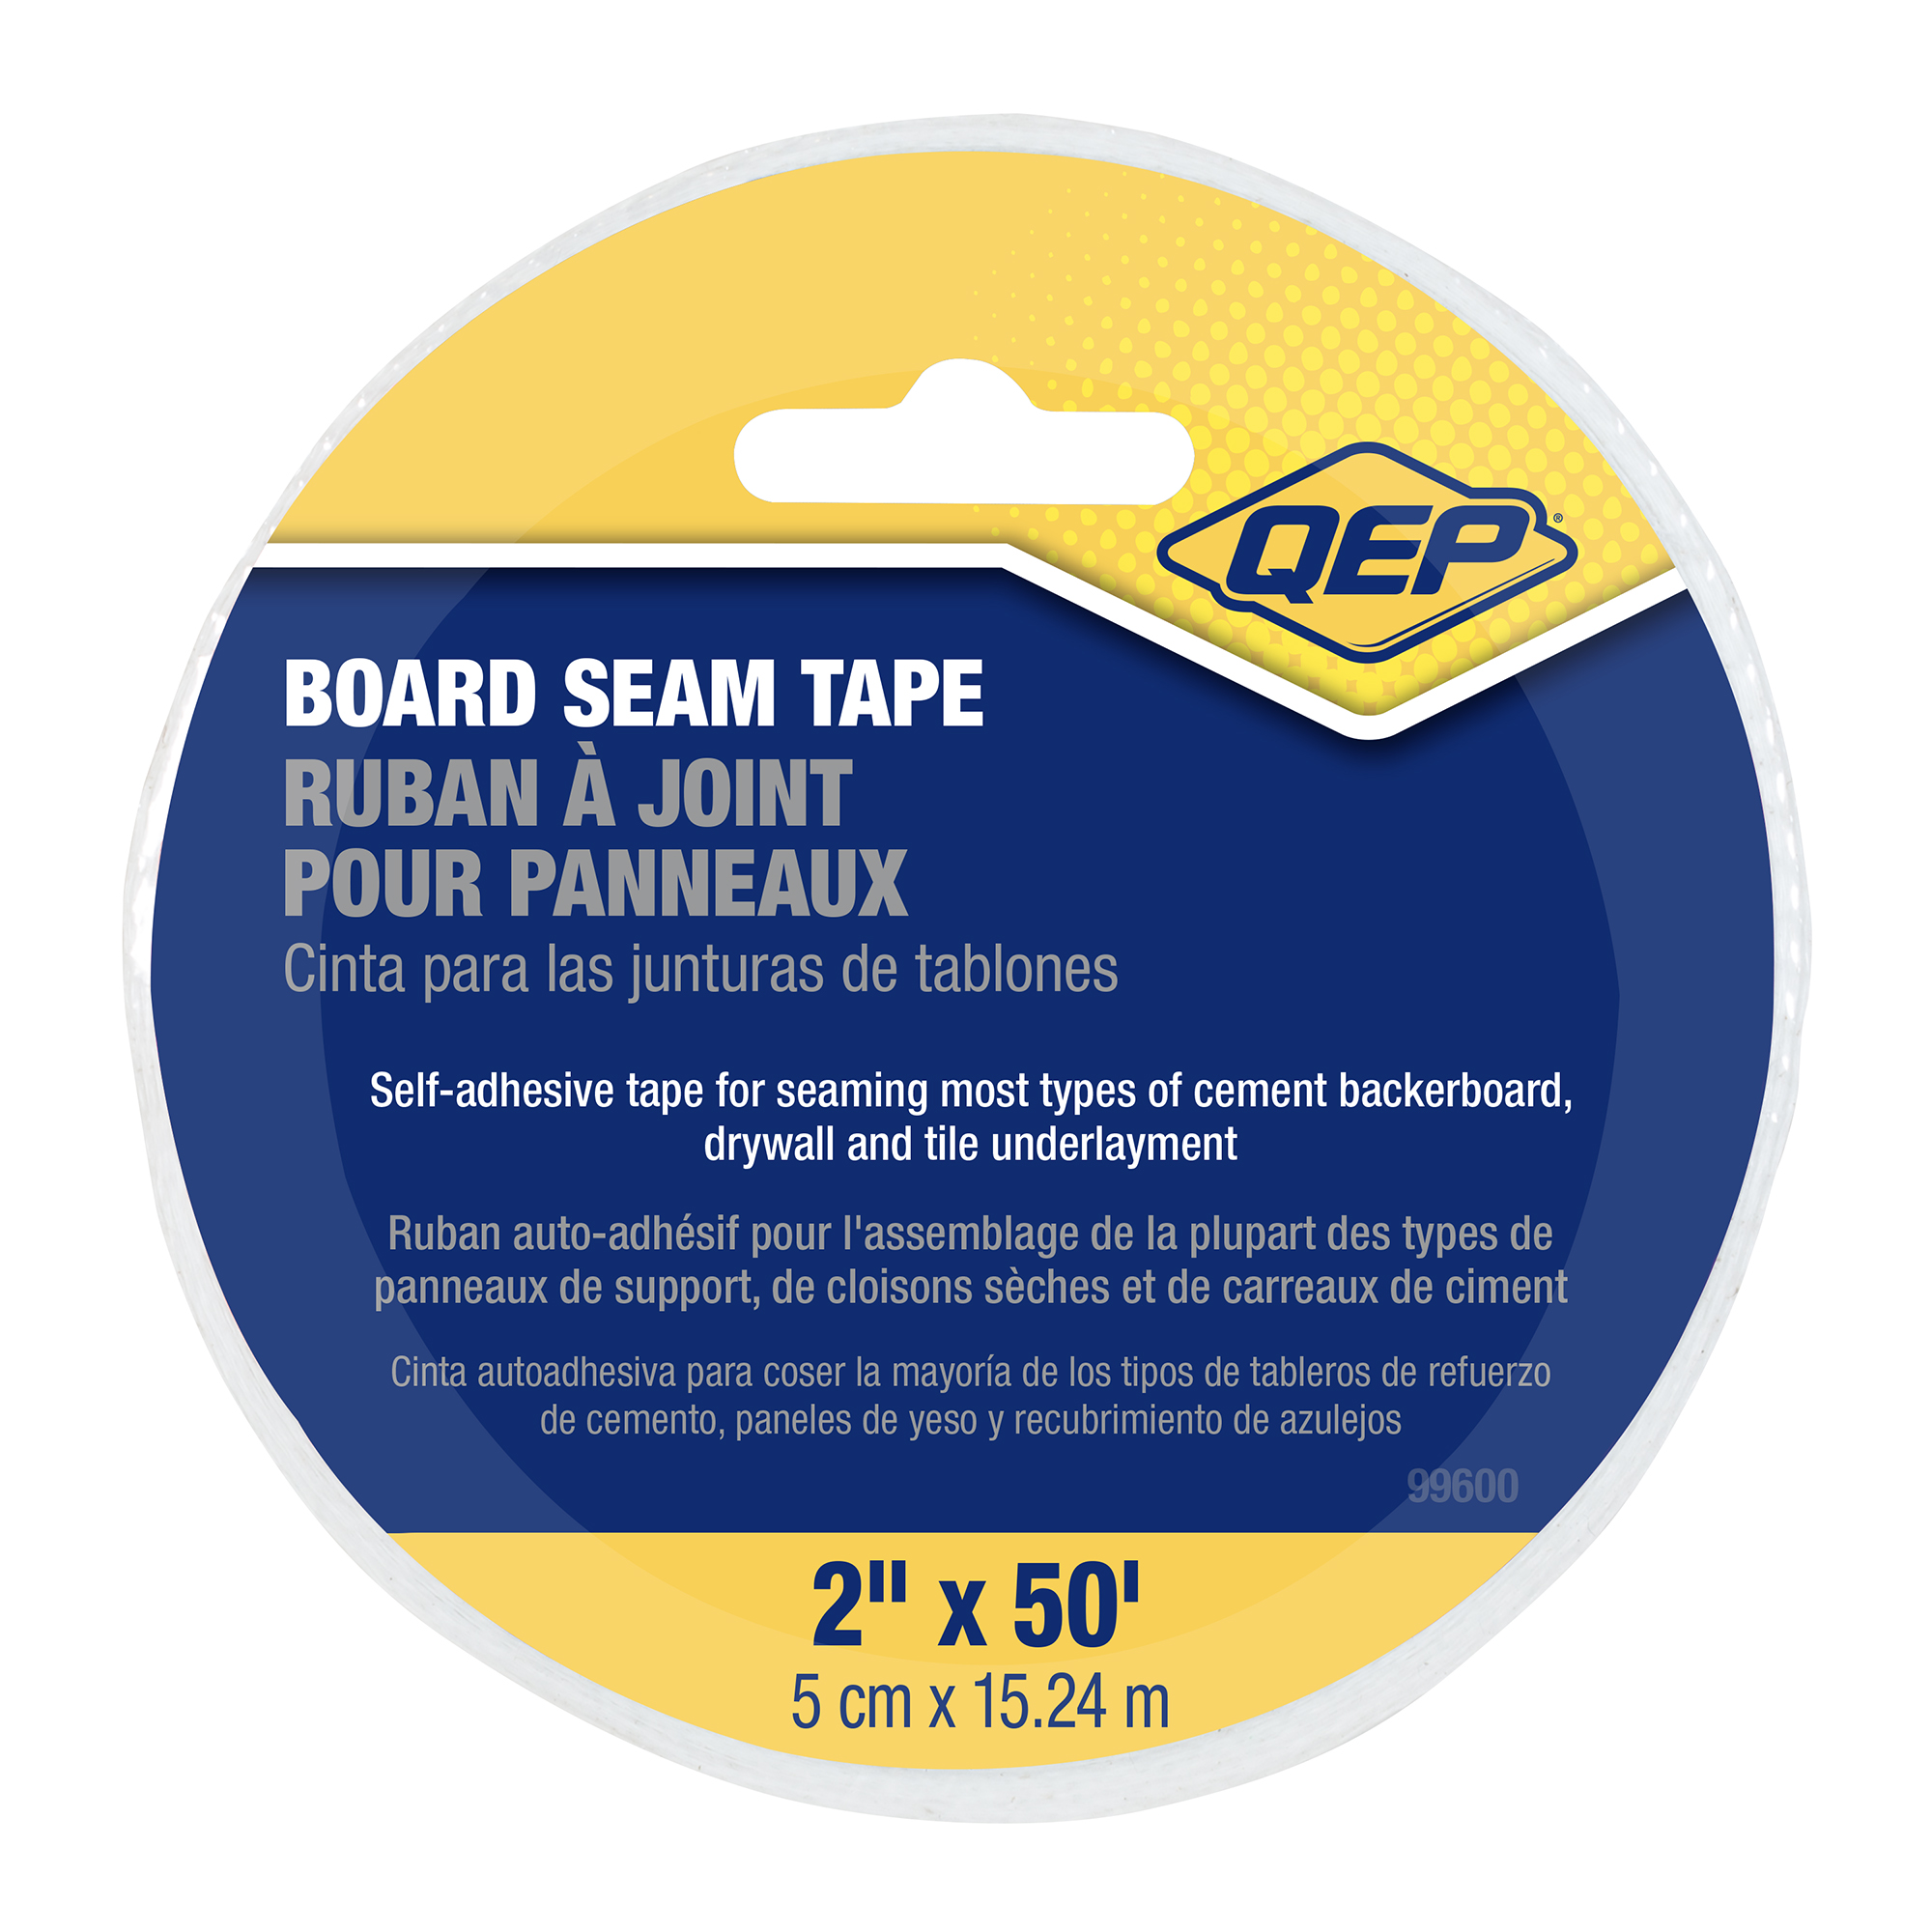 Board Seam Tape